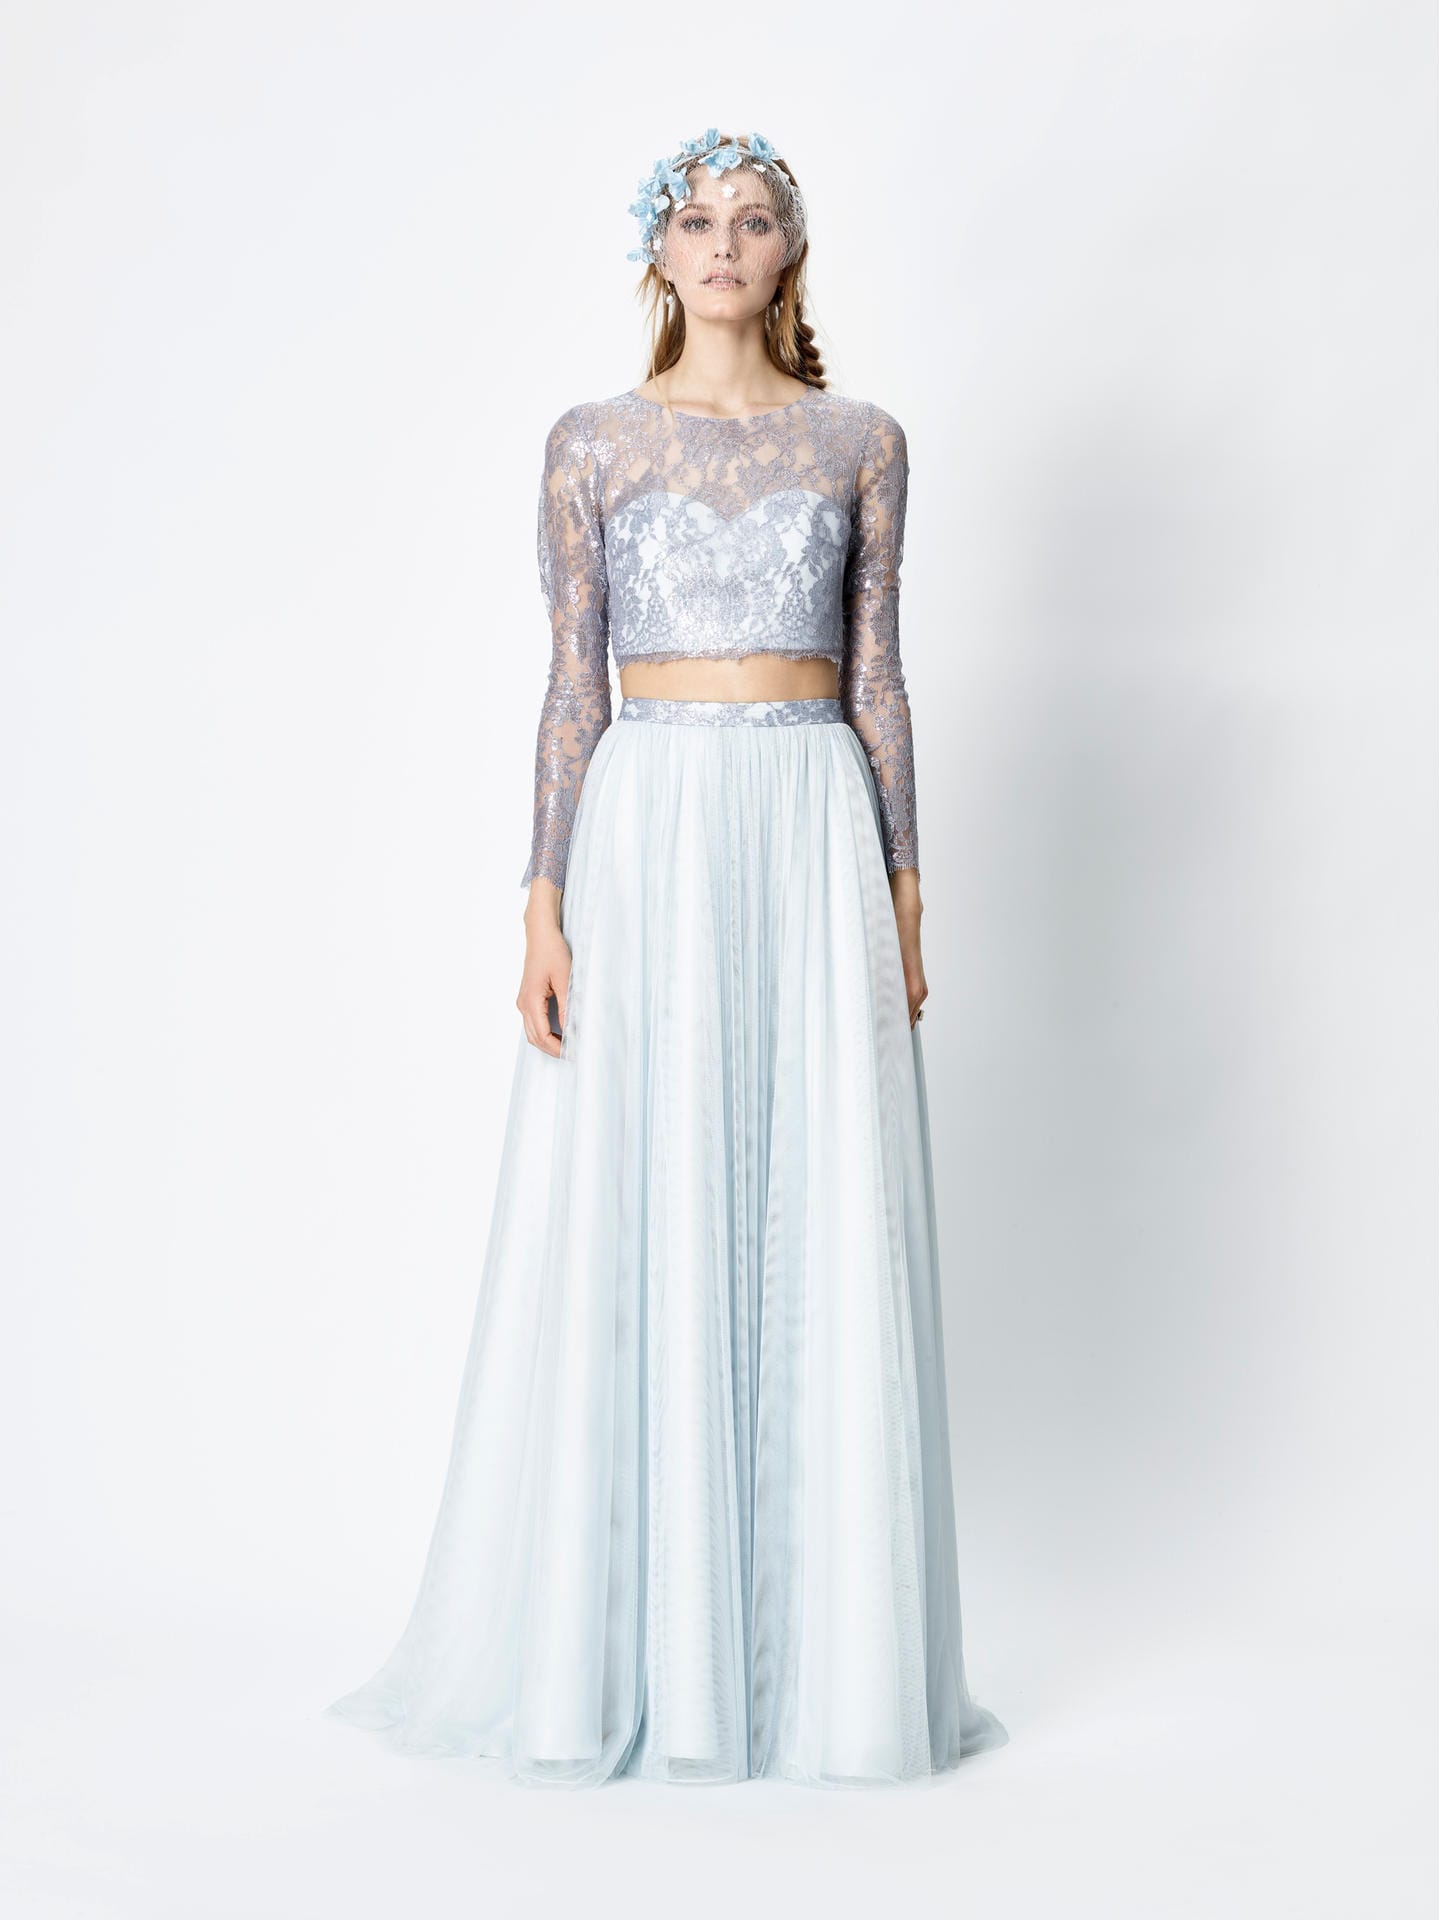 Zarte Blautöne gelten als beliebte Alternative zum Weiß für das Brautkleid. Auch Rembo Styling hat sie in seiner Kollektion – zu sehen bei einem trendigen halbtransparenten Outfit mit freiem Bauch.